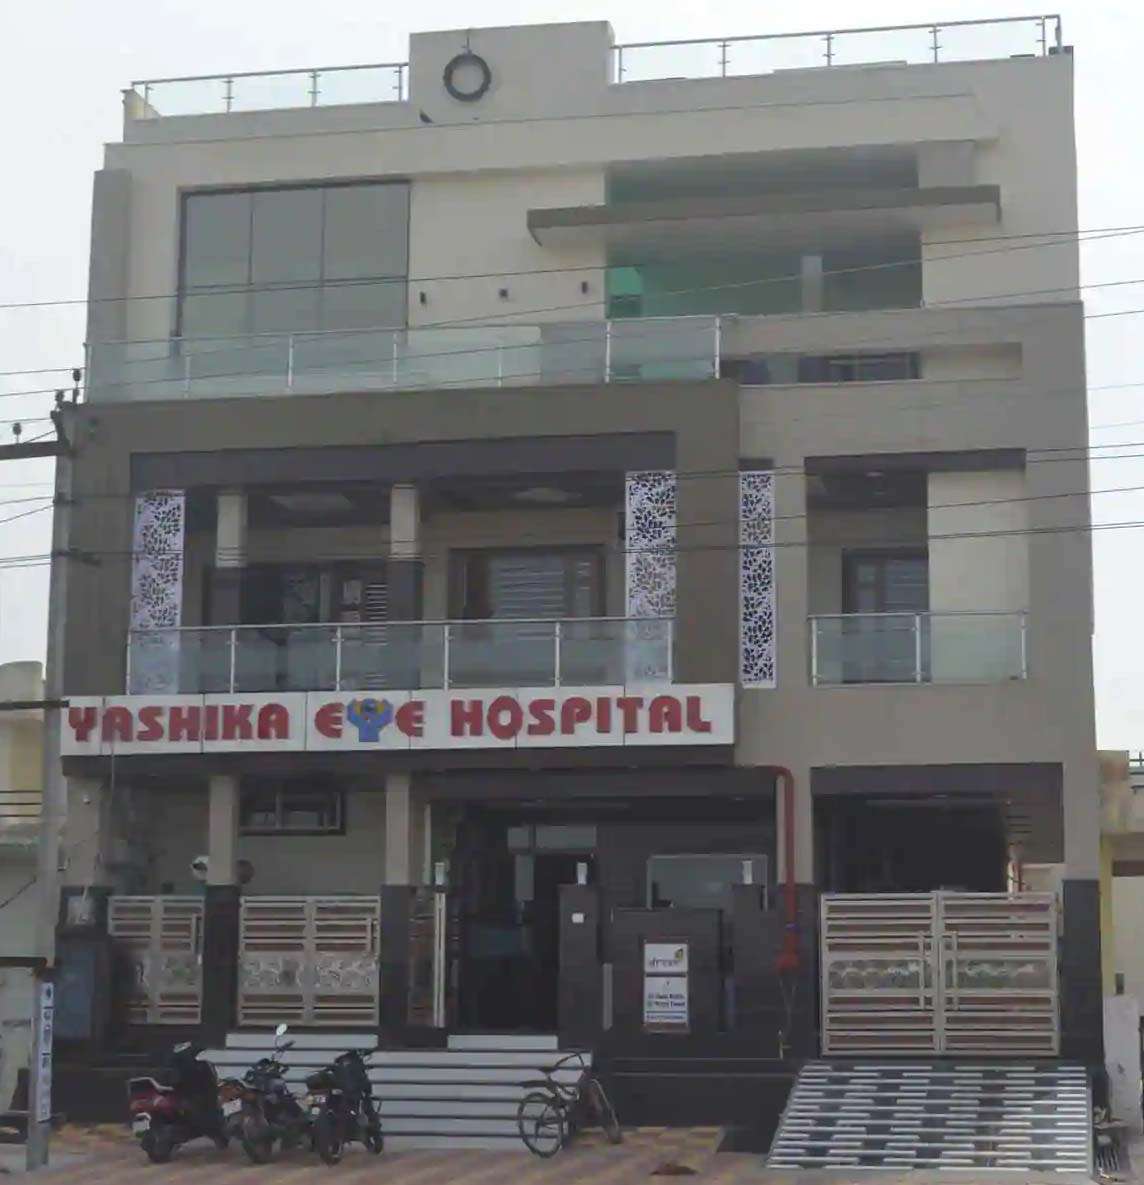 तीन साल पूरे होने पर याशिका आई हॉस्पिटल में 16 को नेत्र परामर्श फ्री